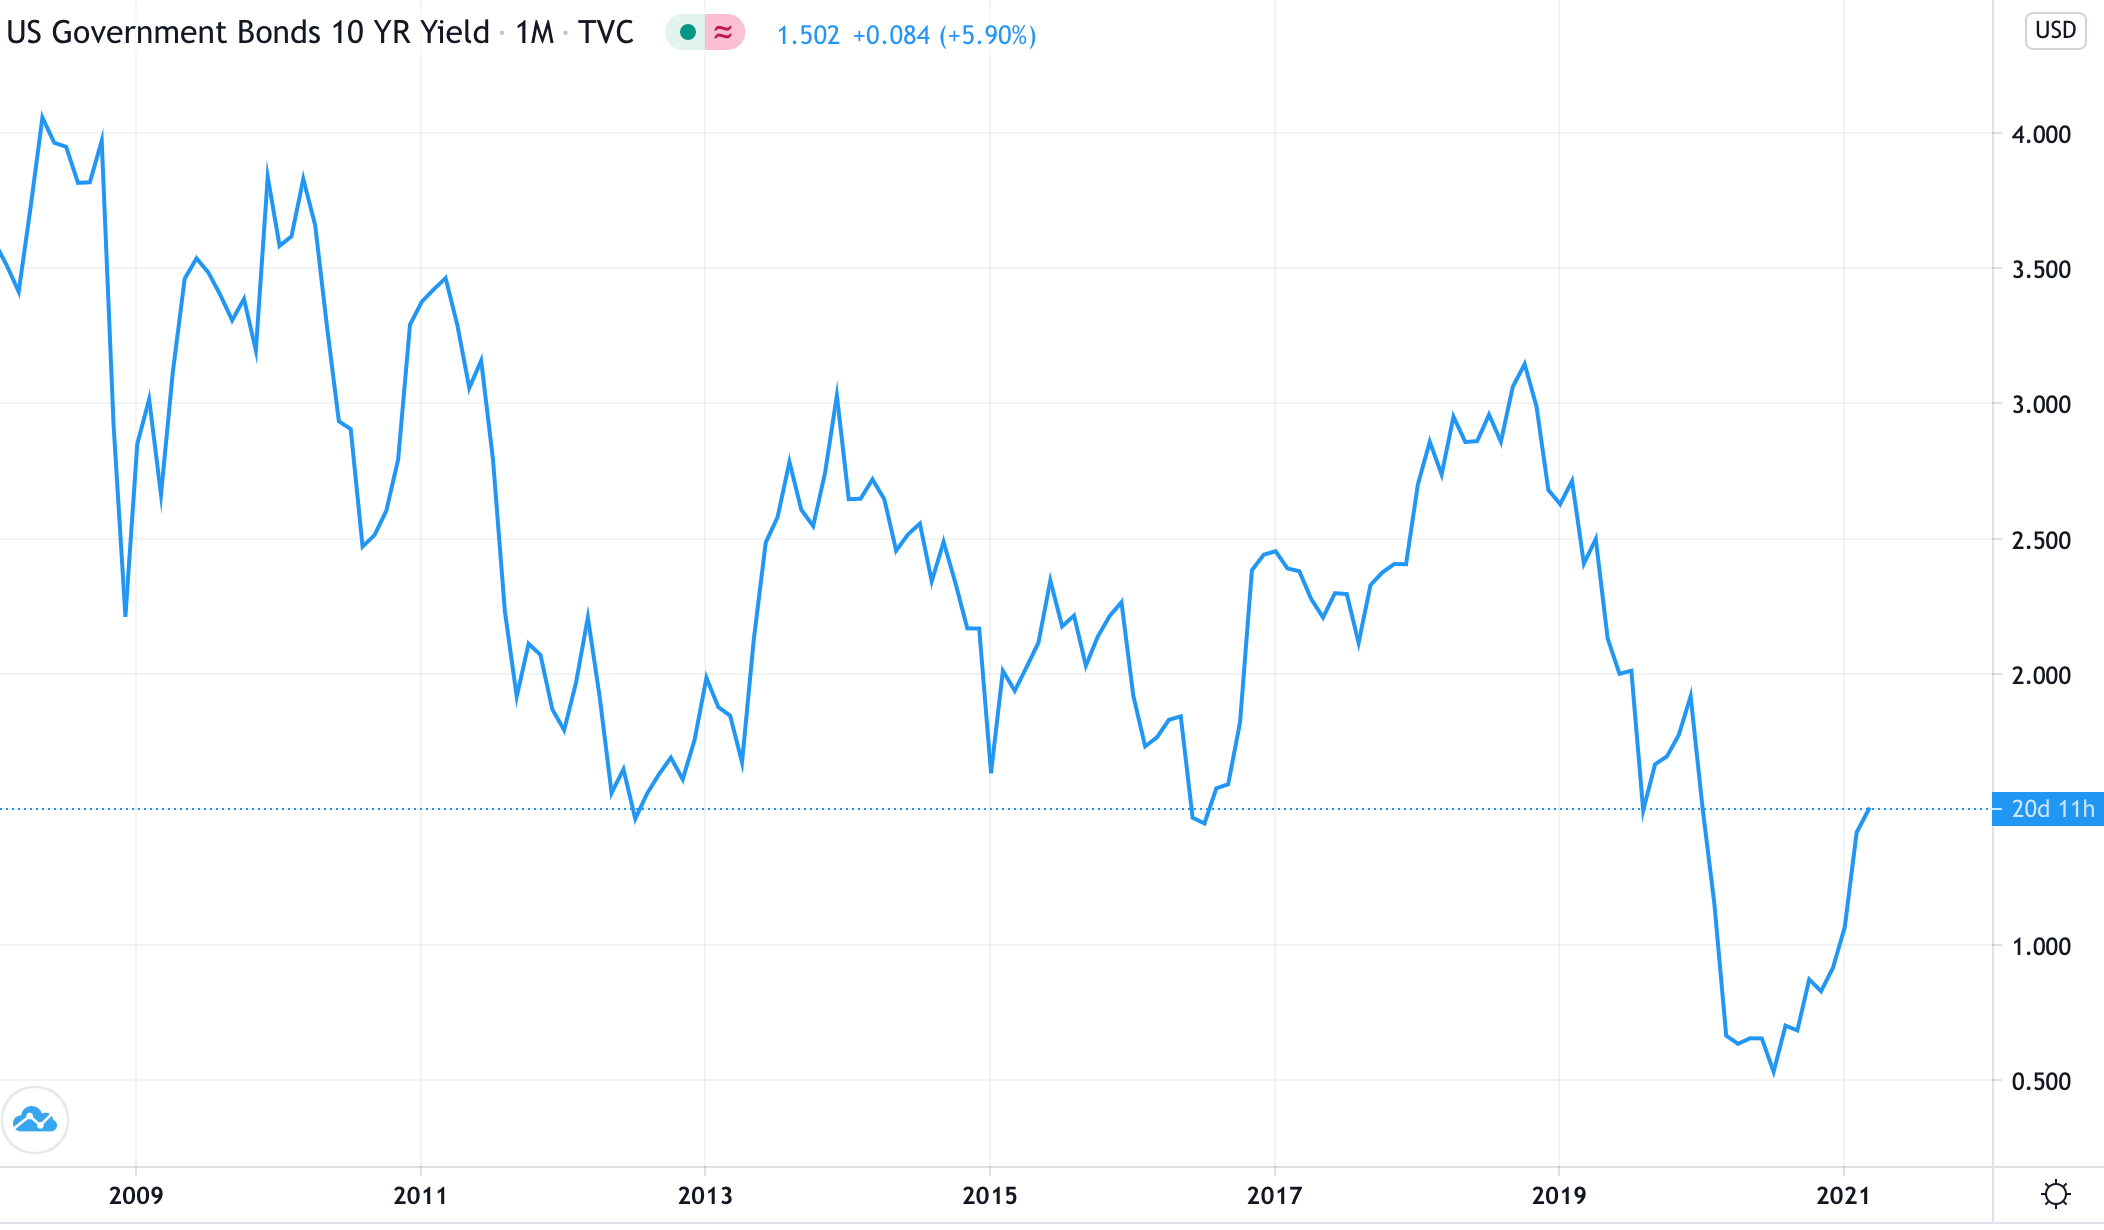 Ten year chart of price of ten-year US treasury yields